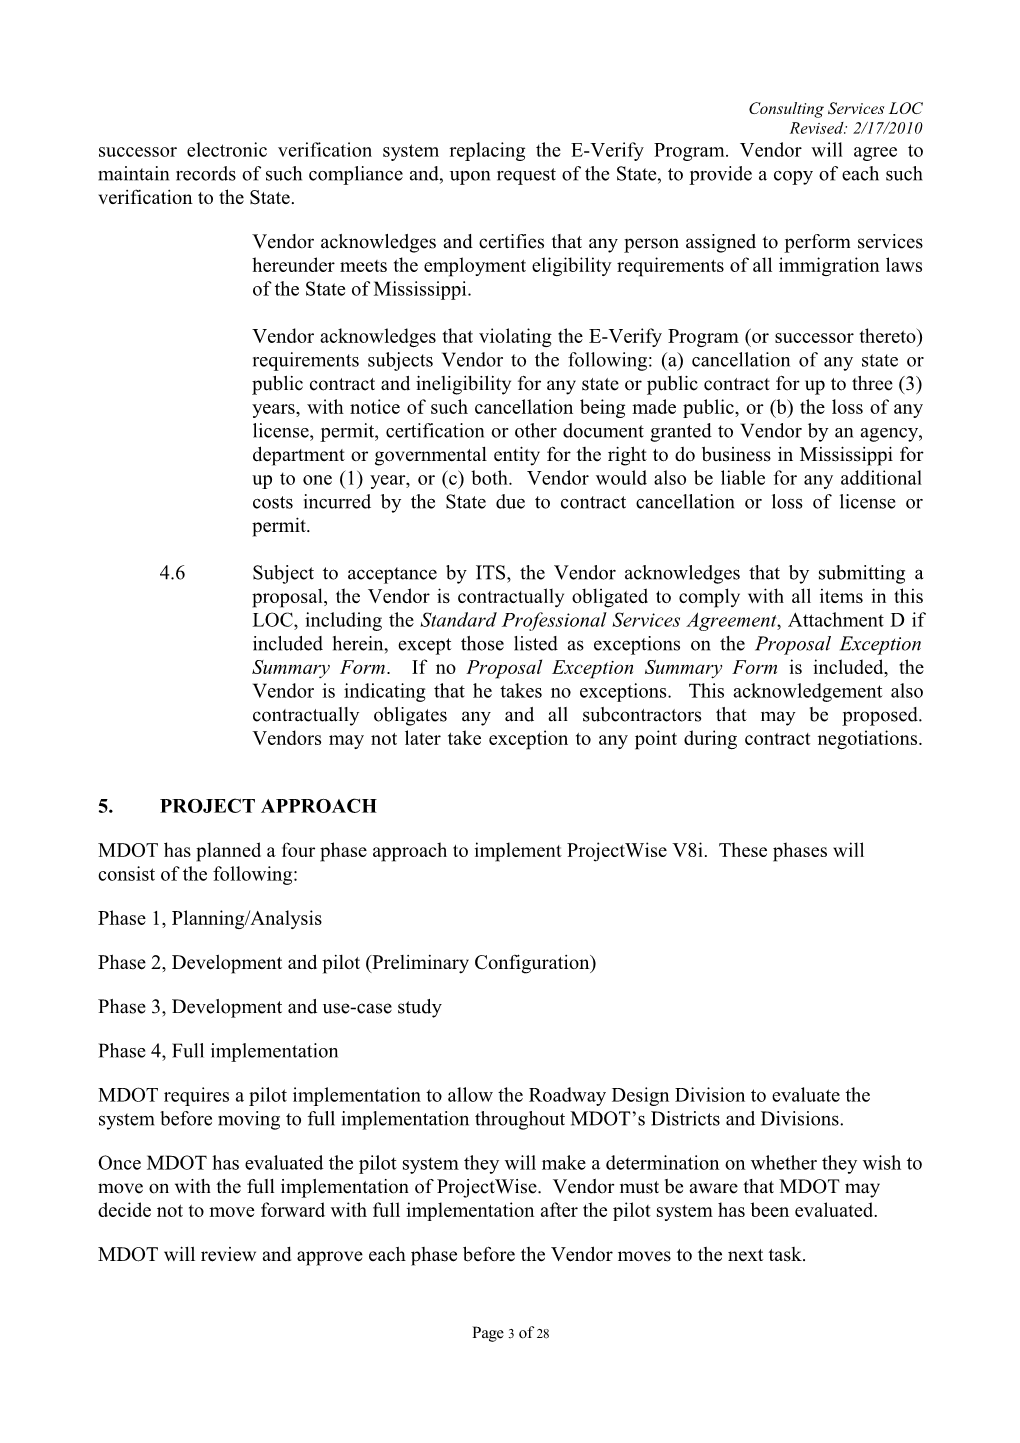 Memorandum for General RFP Configuration s5